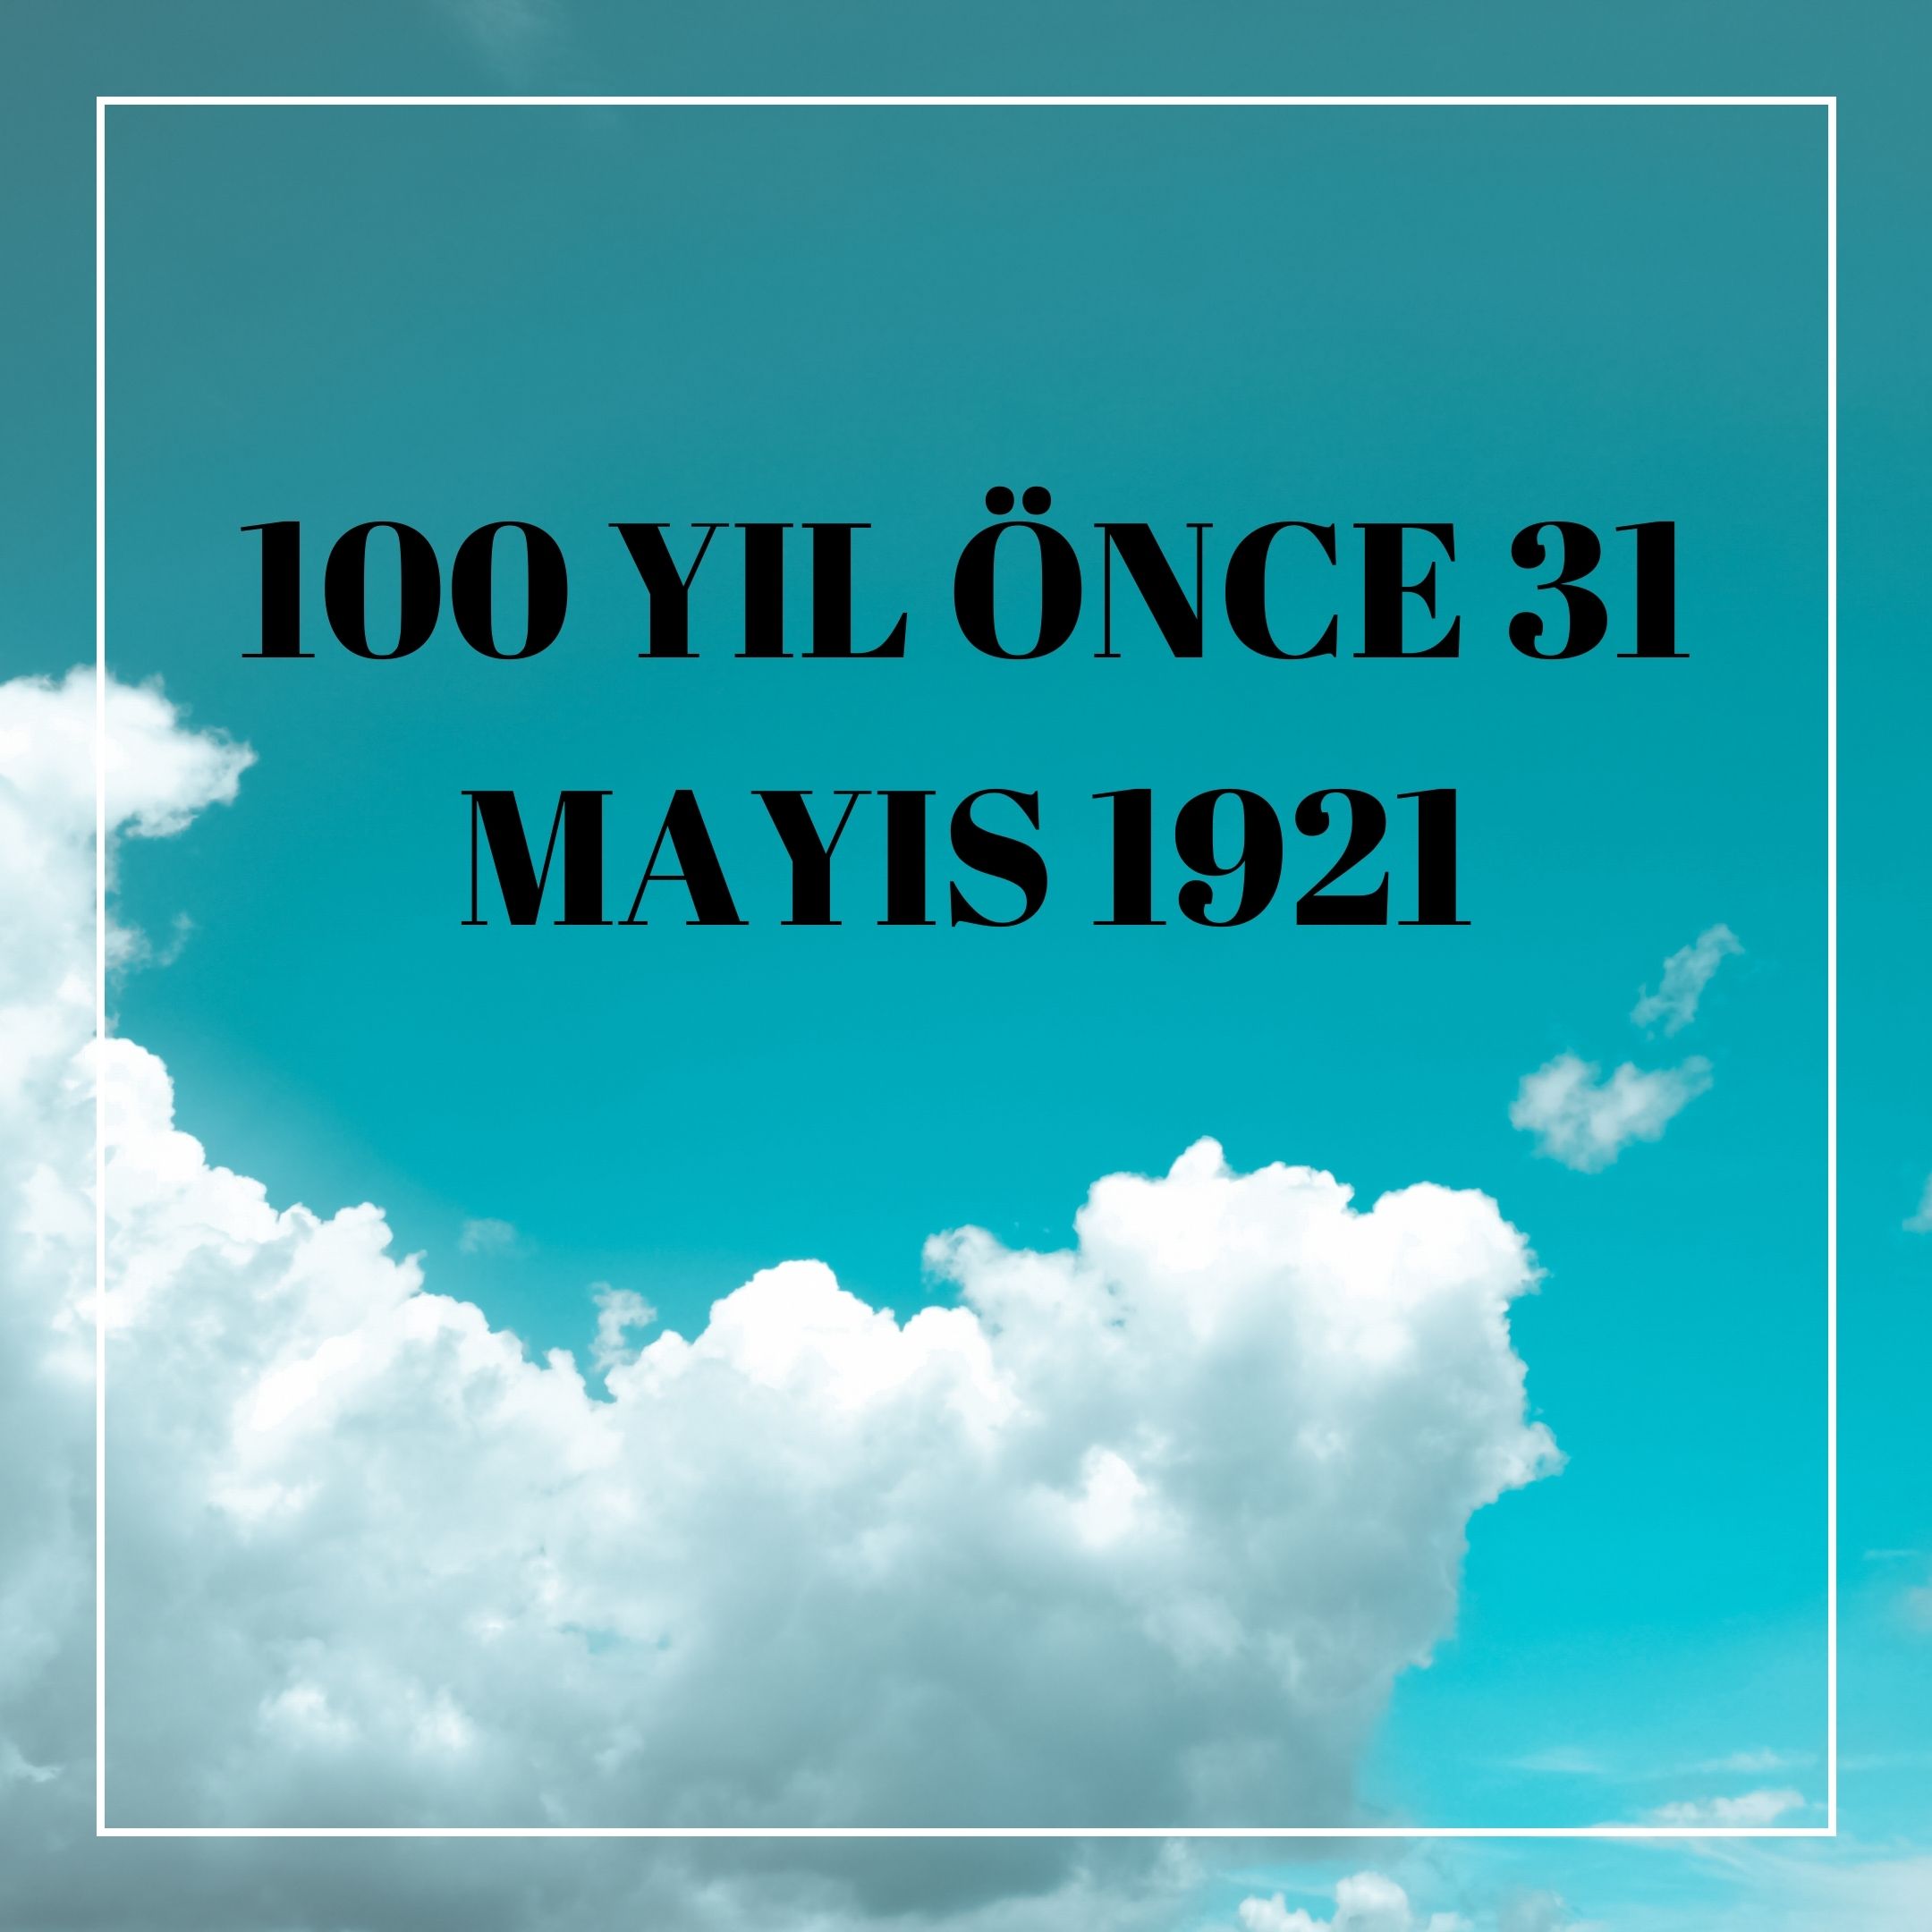 100 YIL ÖNCE 31 MAYIS 1921